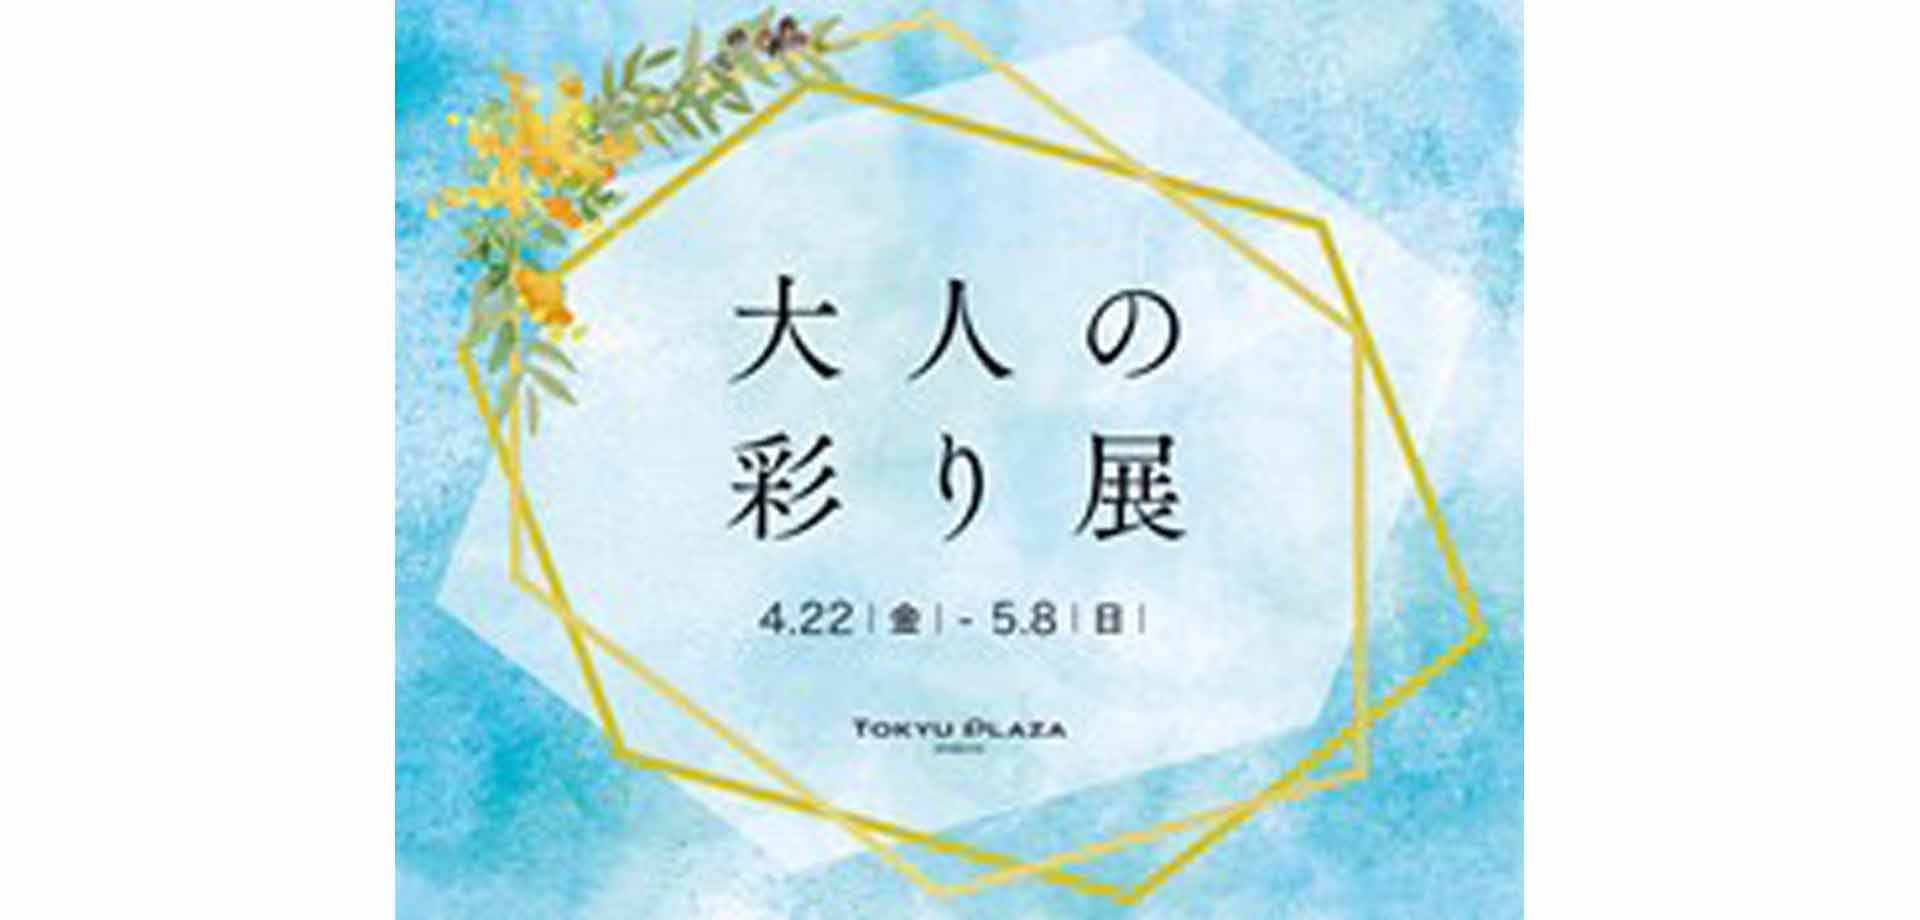 東急プラザ渋谷 のゴールデンウイーク企画「大人の彩り展」クリーマ